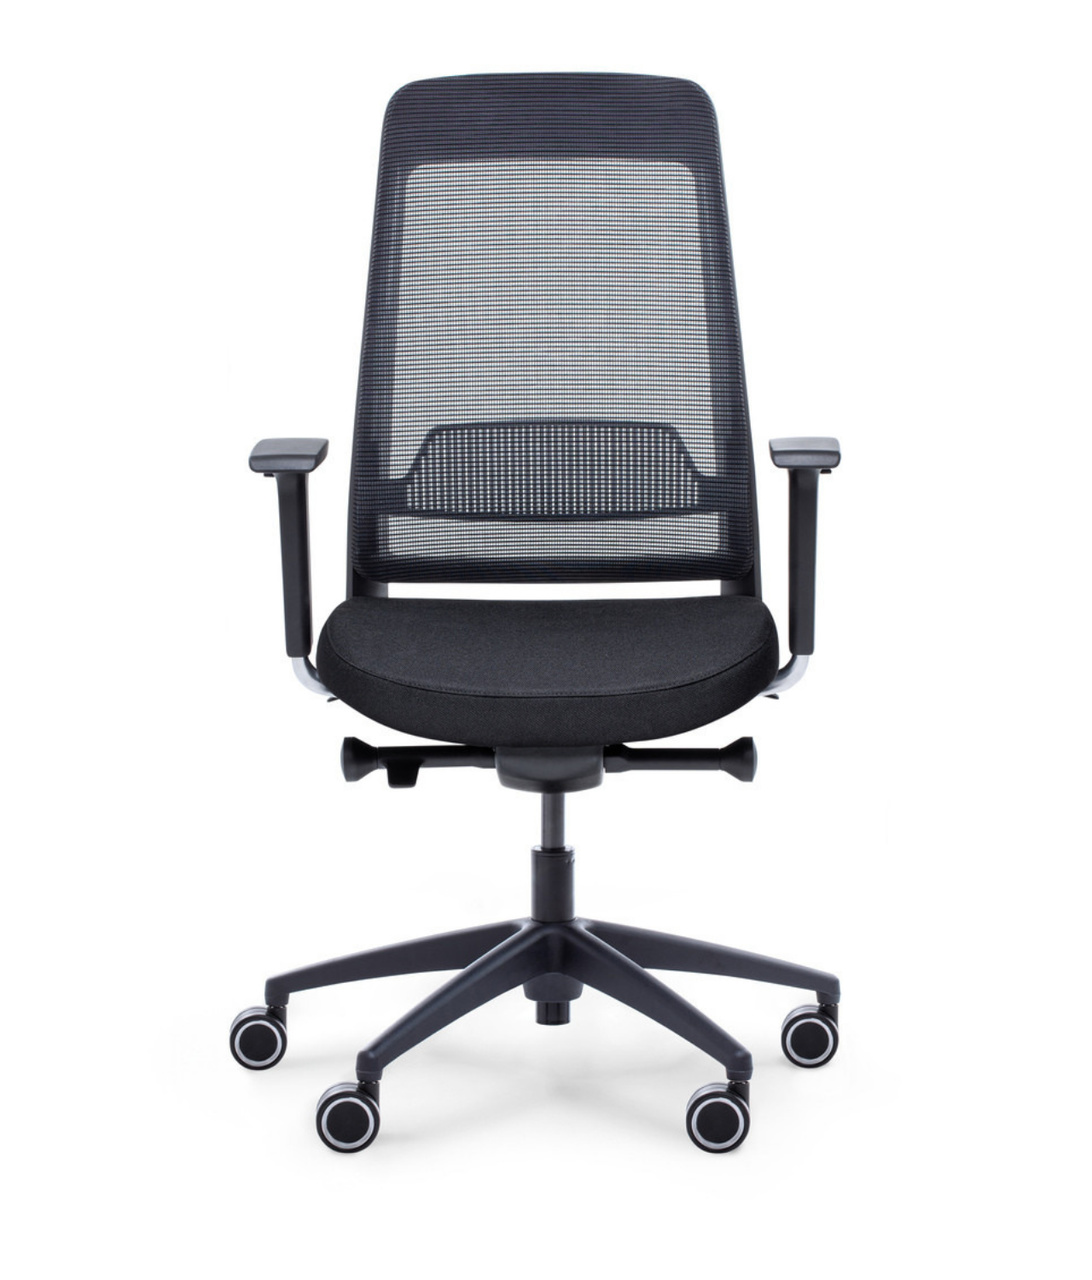 przÃ³d fotel ergonomiczny Shine EFG 101B